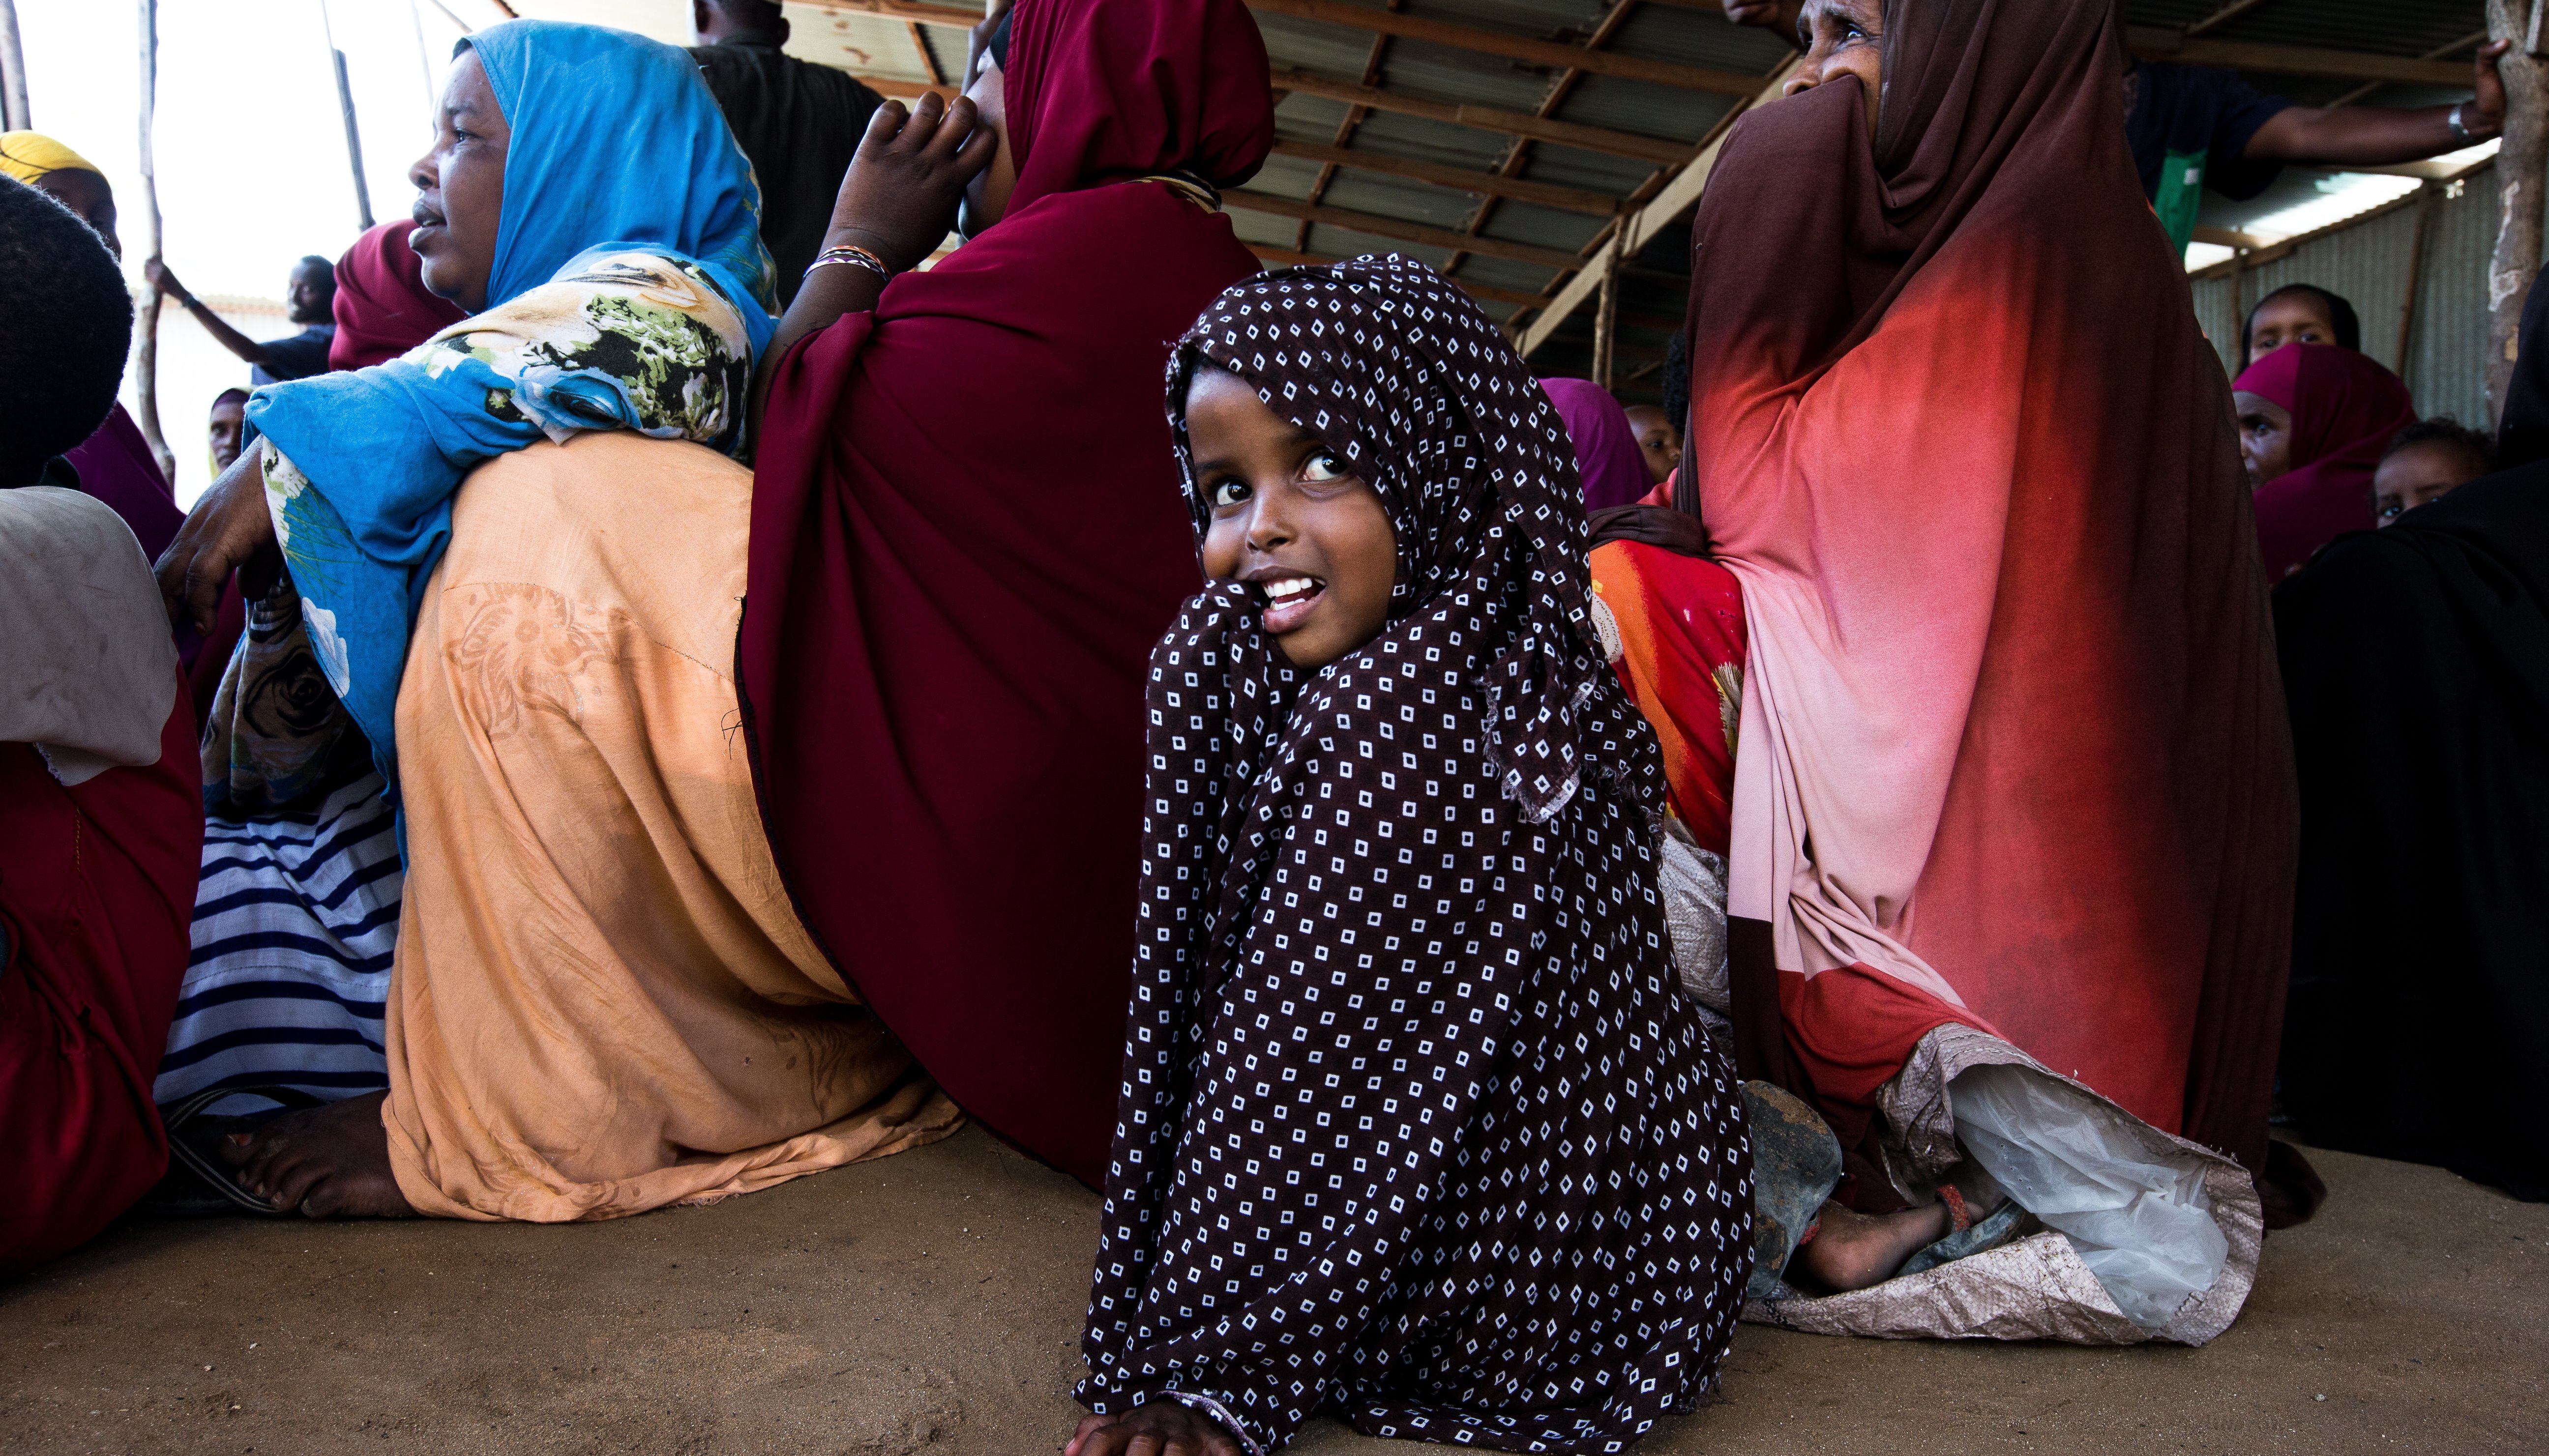 Read Ohne Pause gegen eine Hungersnot in Somalia by UN World Food Programme